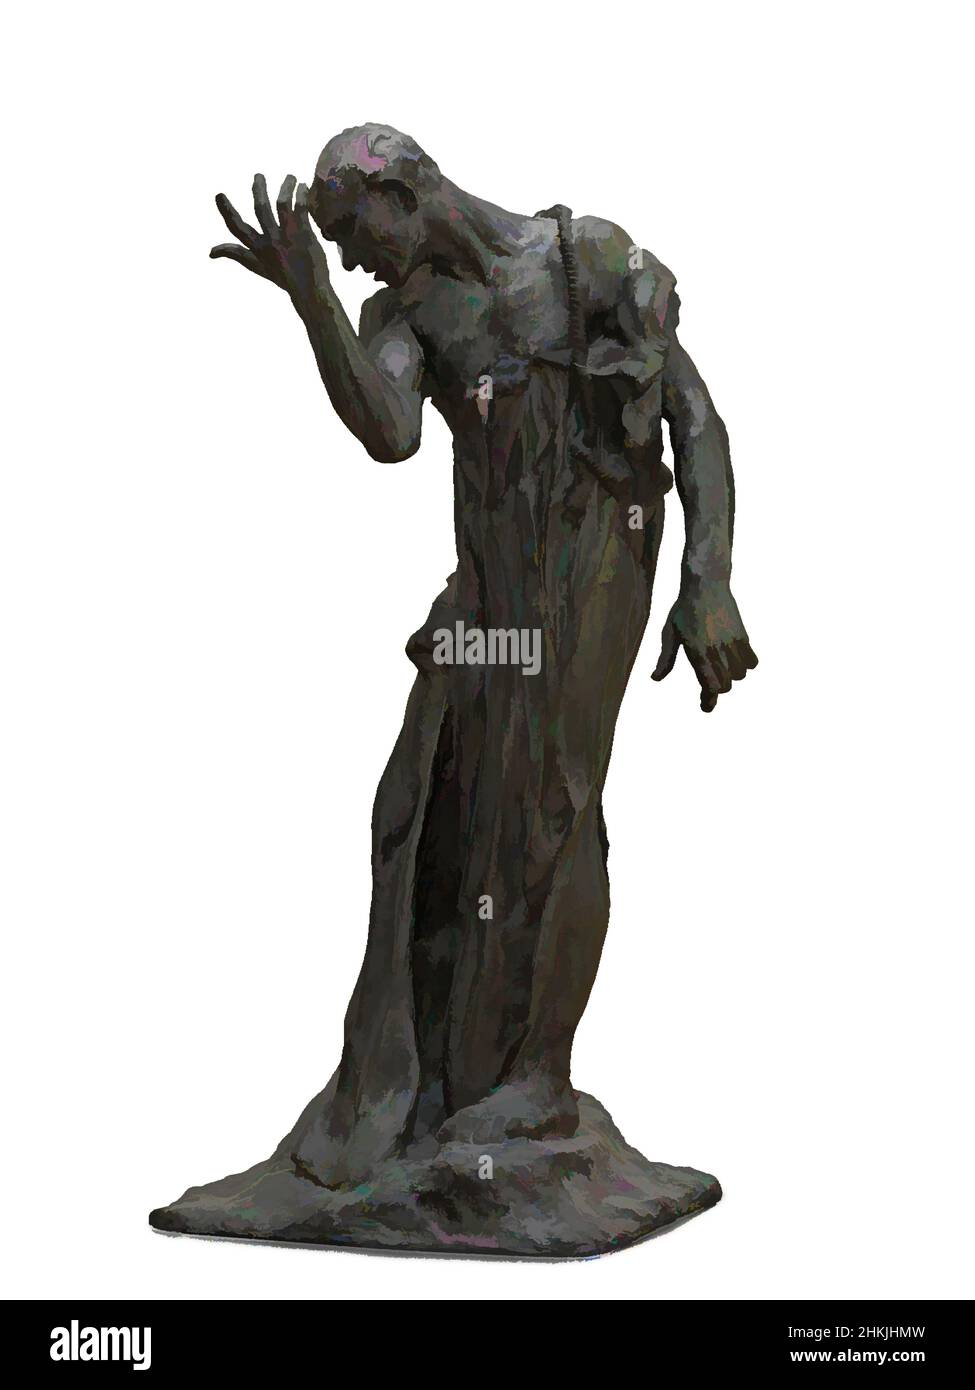 Rodin kunstwerke -Fotos und -Bildmaterial in hoher Auflösung – Alamy